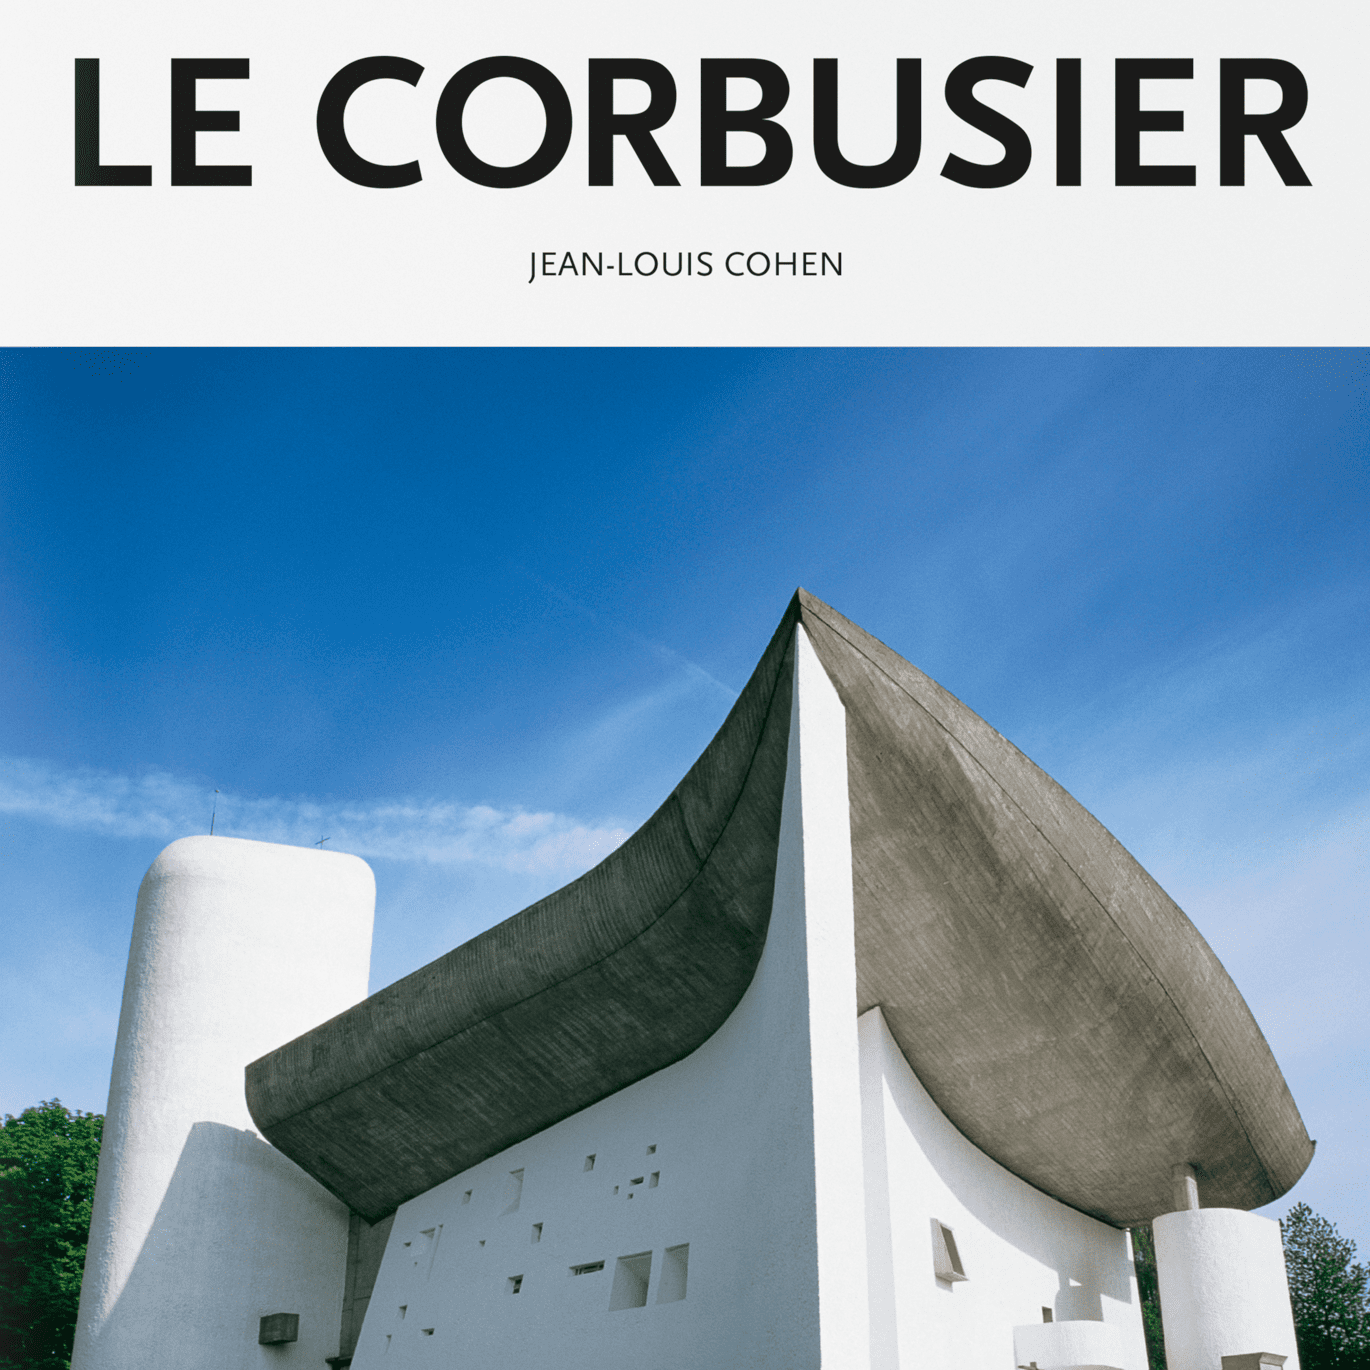 Le Corbusier Modernism की तस्वीर